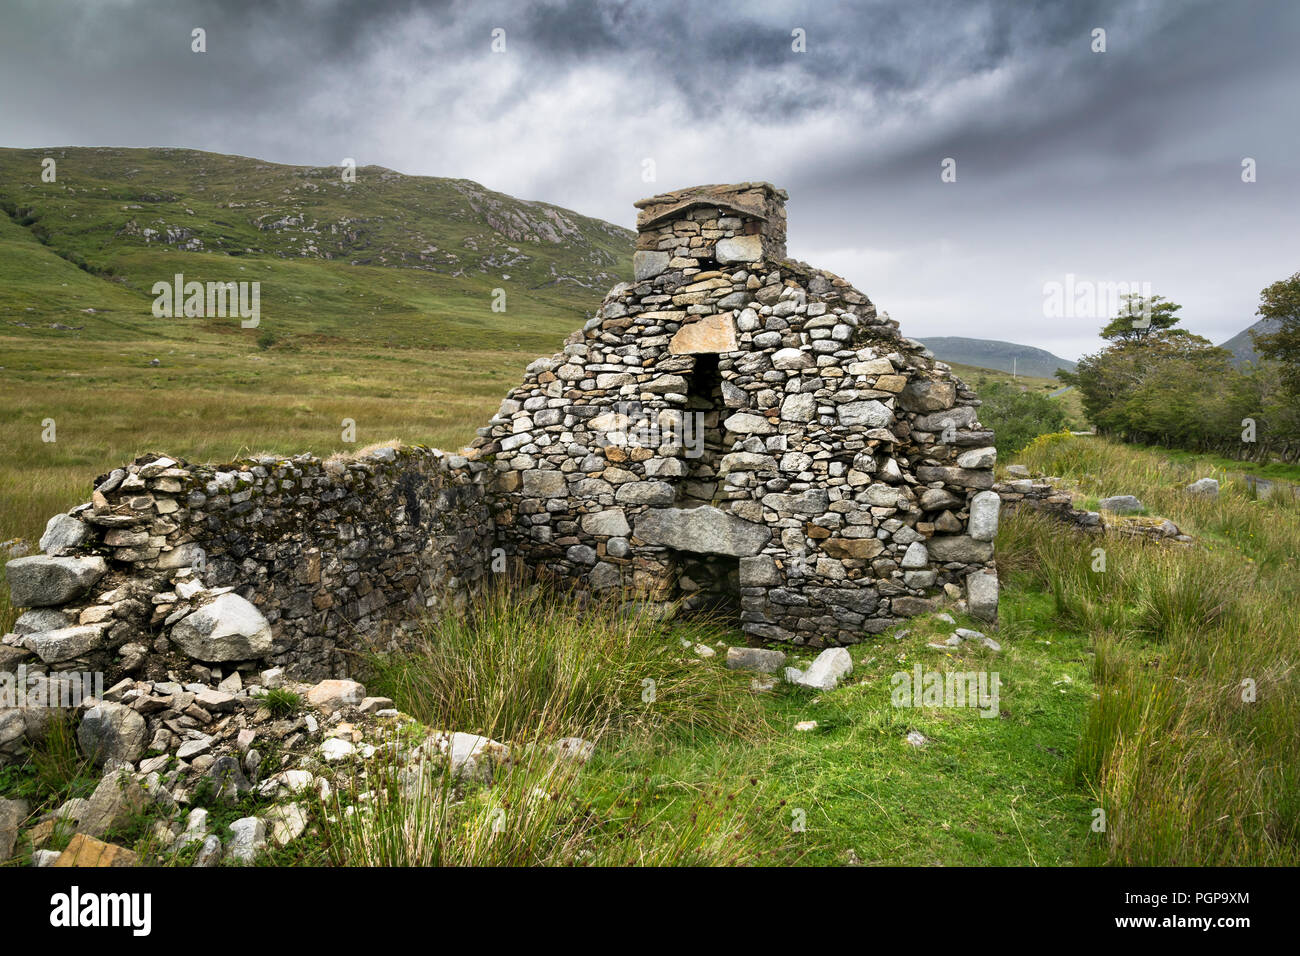 Hier ein Bild von den Ruinen einer Hungersnot Ferienhaus in Donegal Irland. Dies war eine von vielen Häusern in einem abondon Dorf in einem abgelegenen Teil der Befestigung Stockfoto